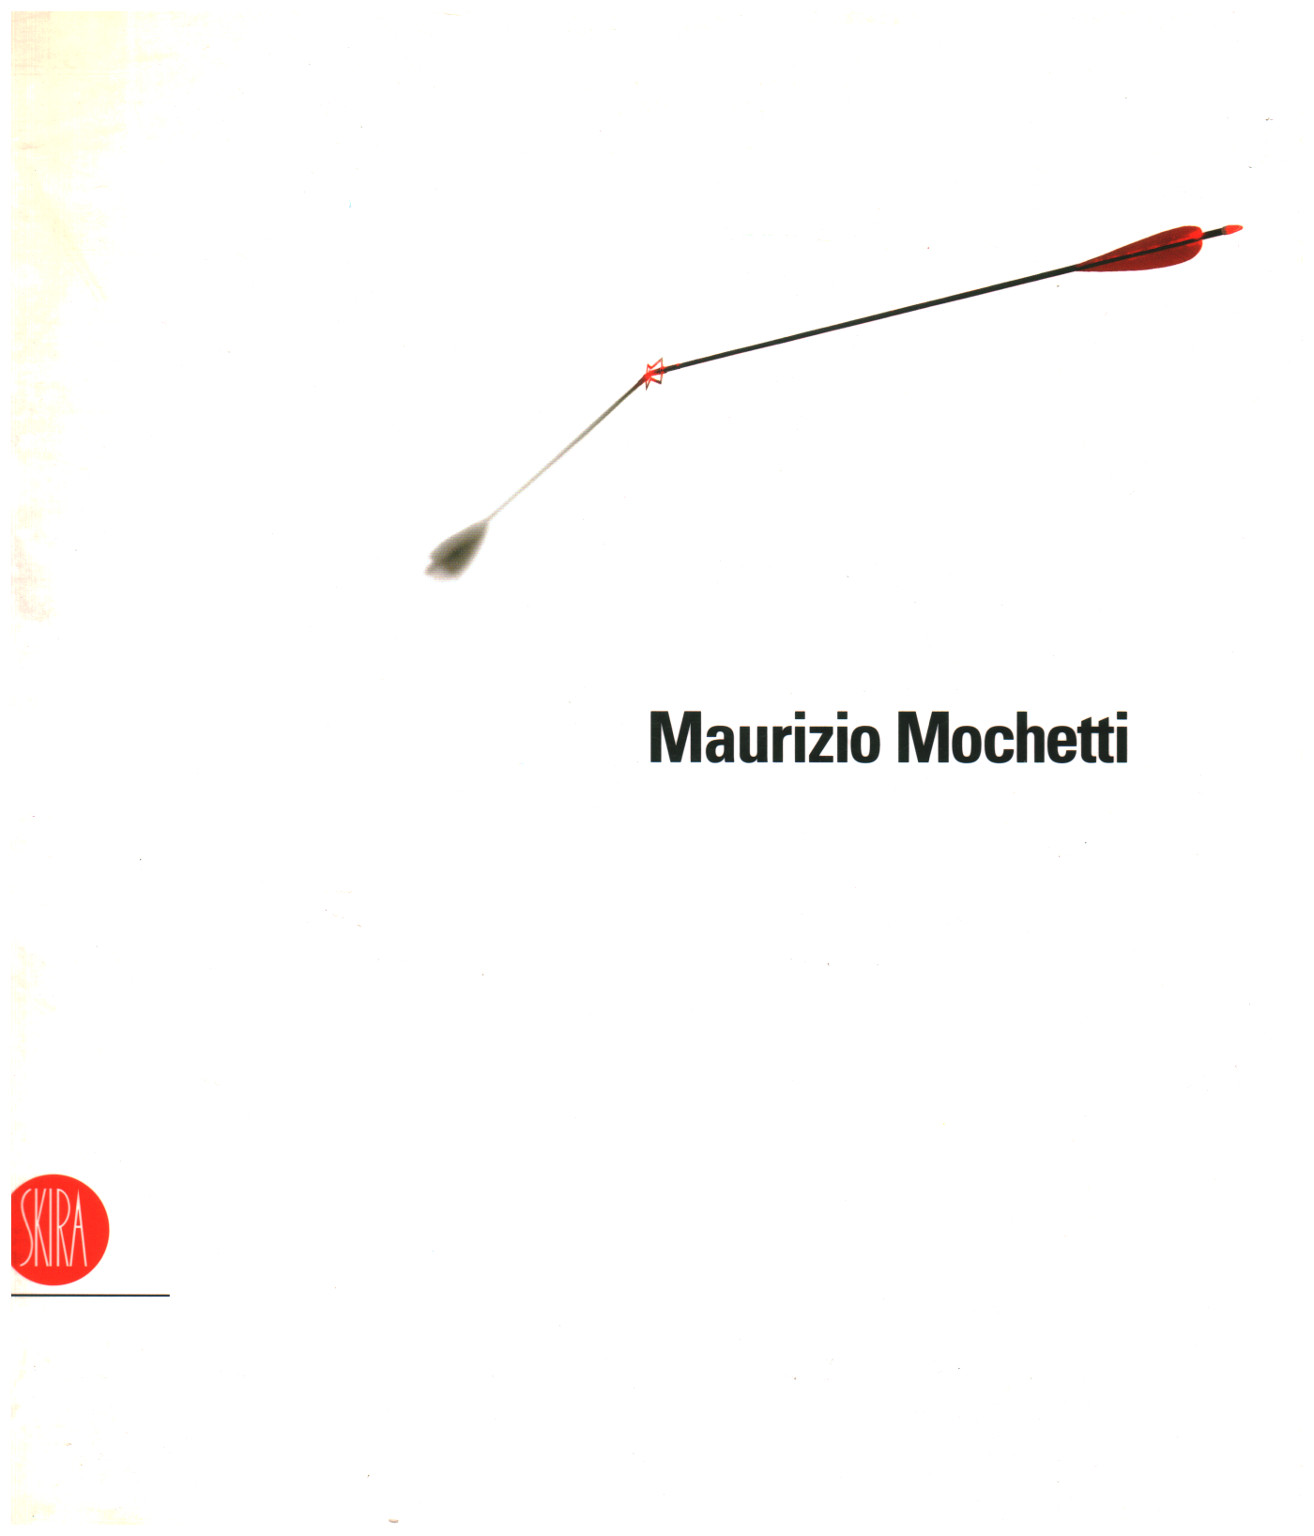 Maurizio mochetti entwickelt ausgewählt, s.zu.